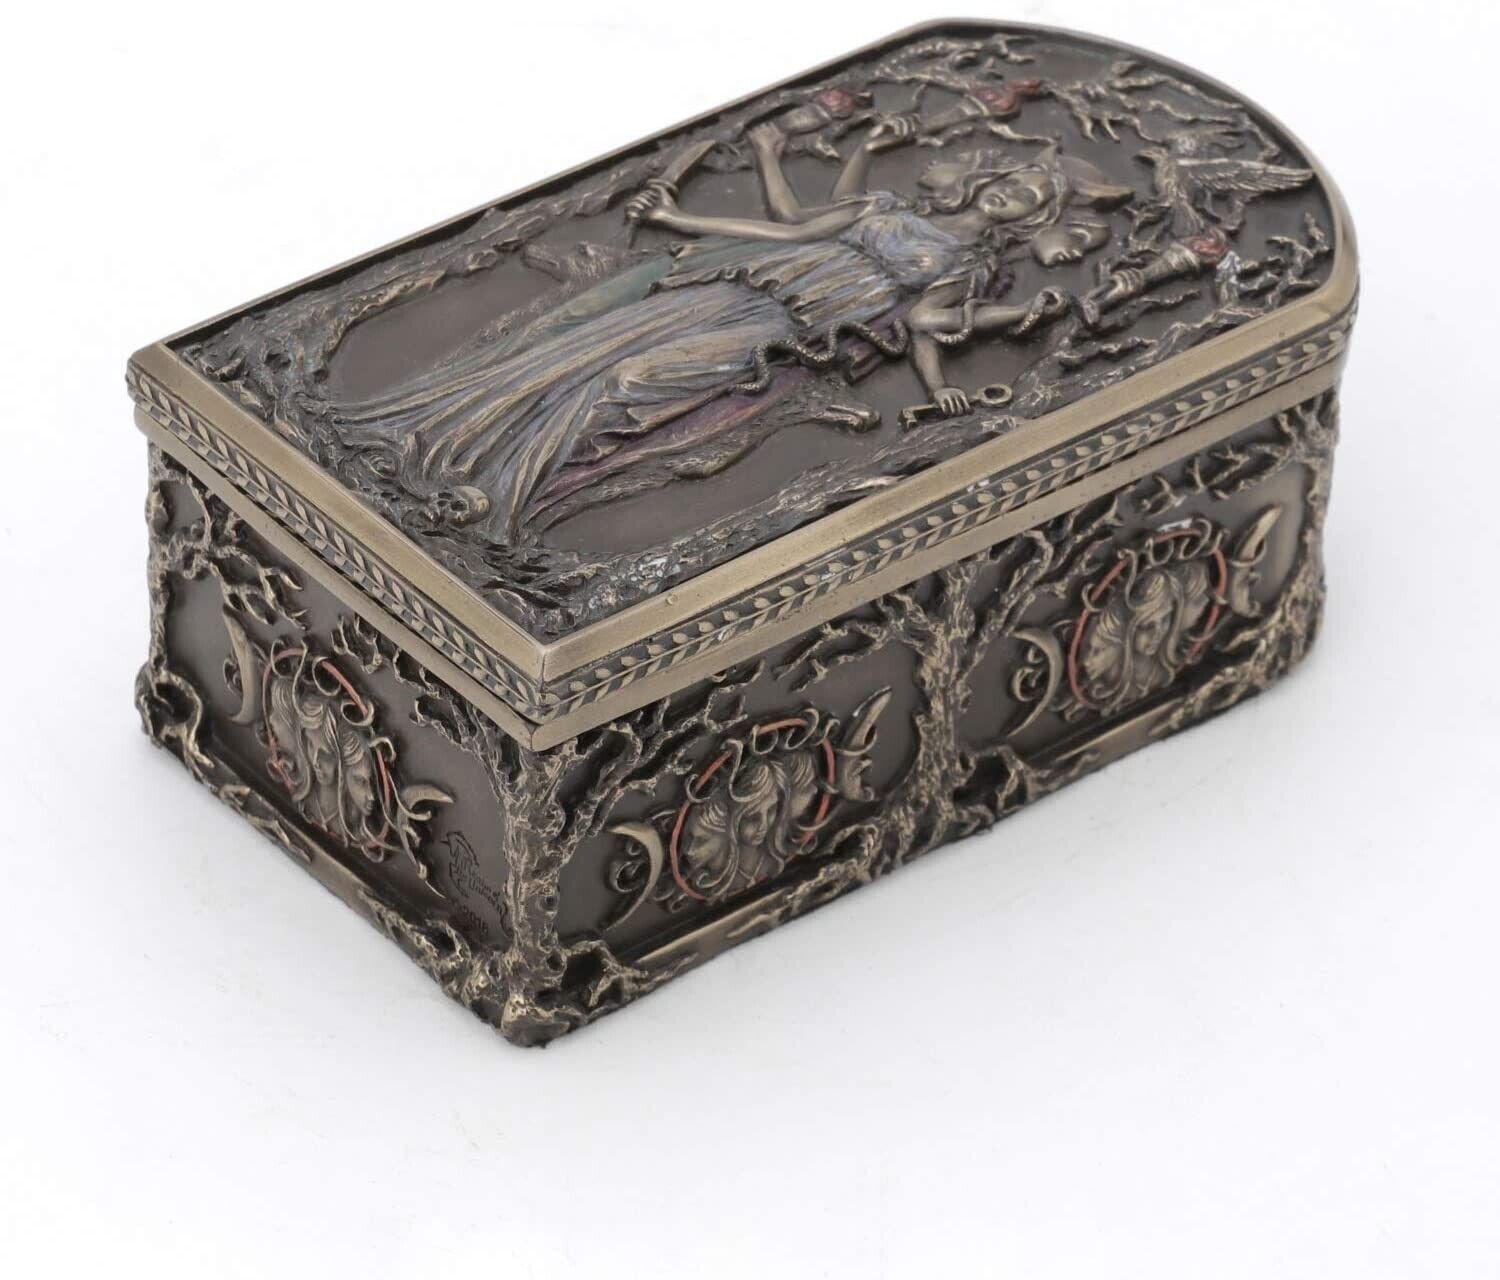 Cold Cast Bronze Greek Mythology God Hecate Trinket Box